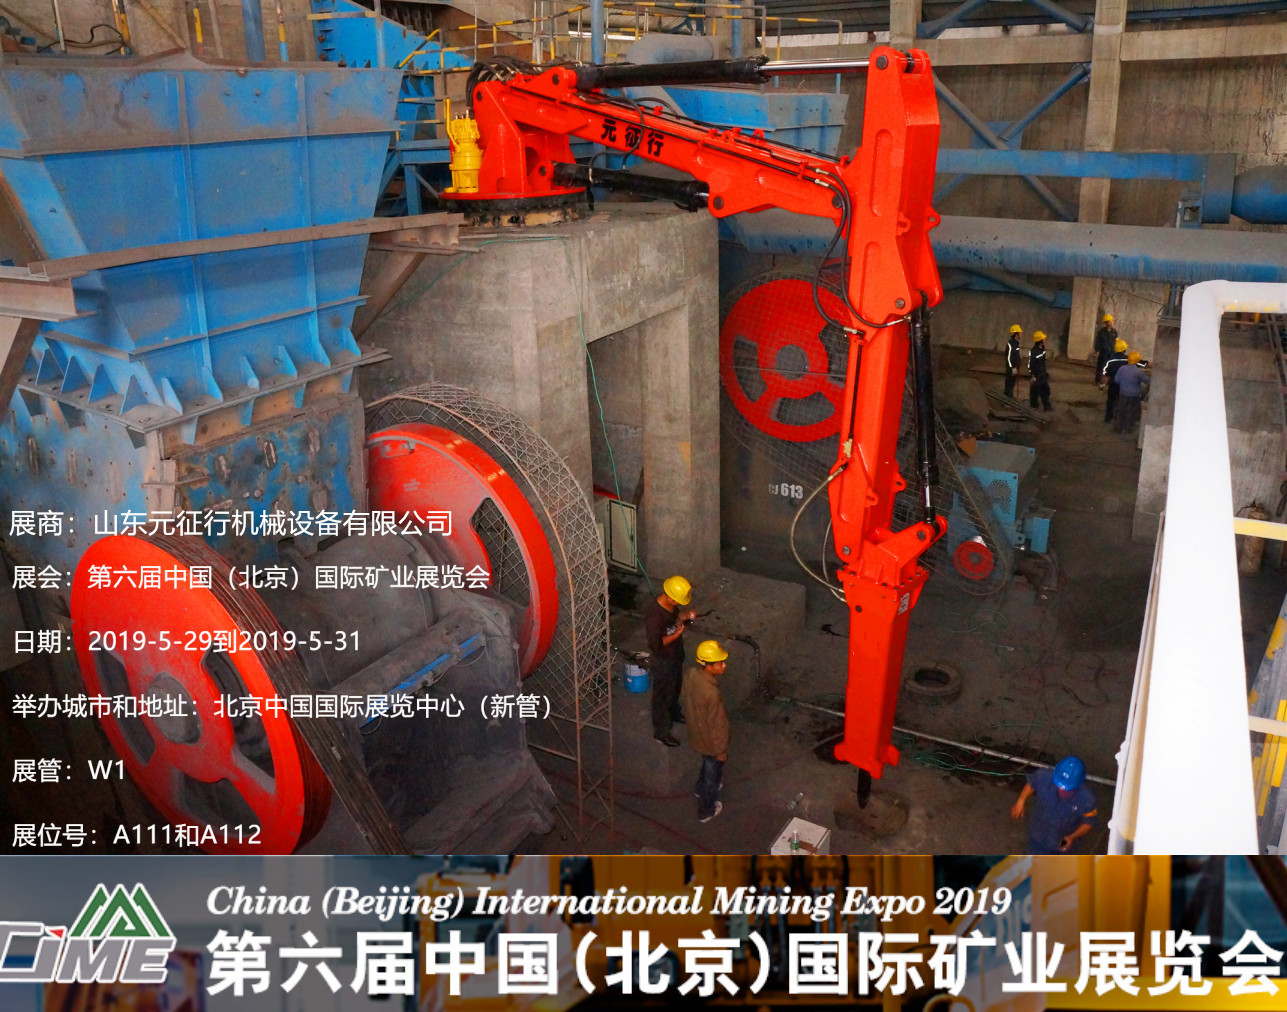 元征行将携固定式液压破碎机参加中国（北京）*六届中国国际矿业展览会